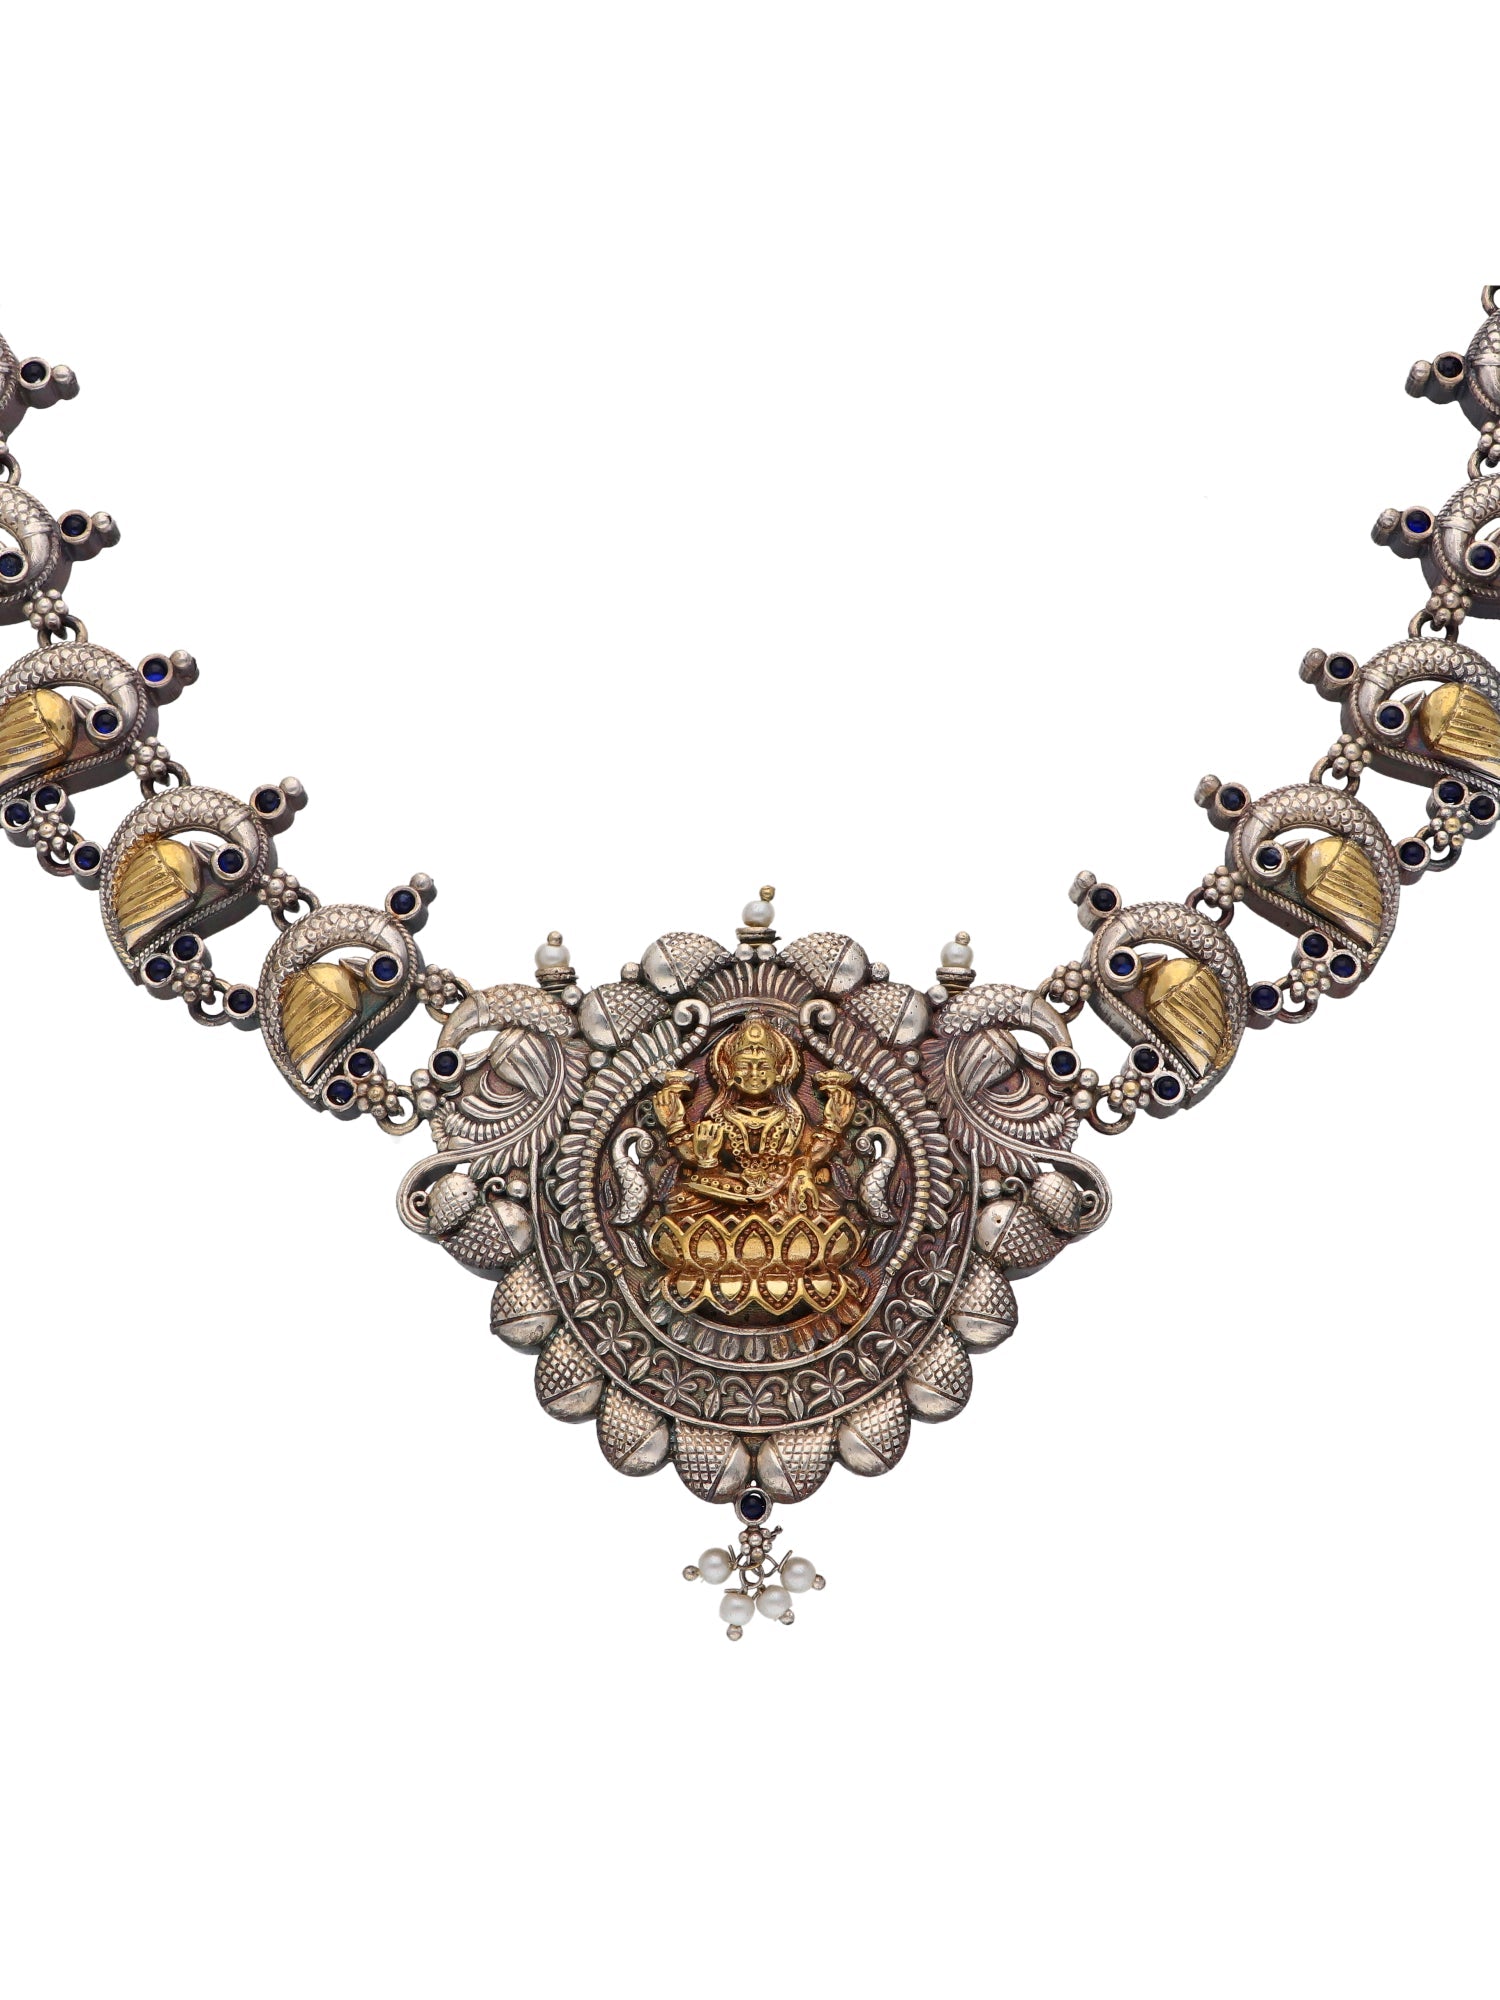 The "Devi" Necklace Set 